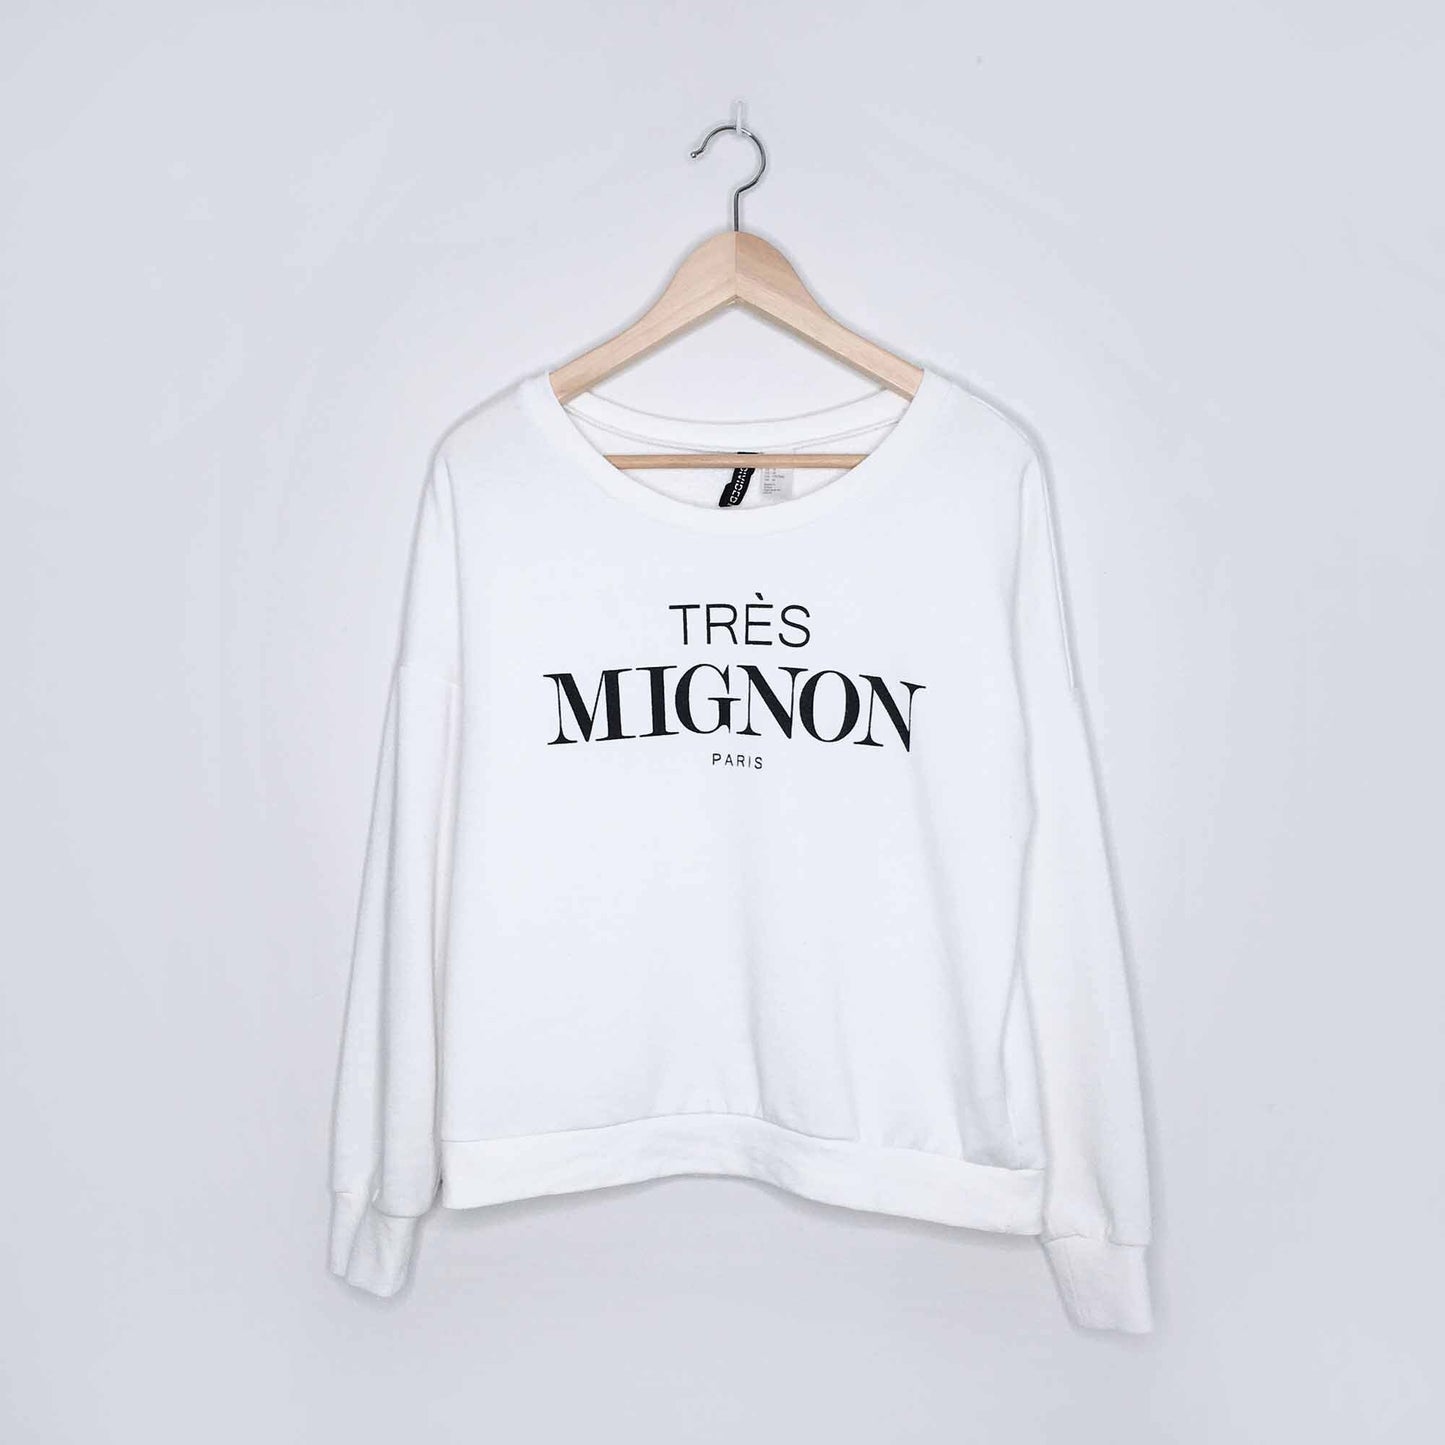 H&M Dividend trés mignon paris sweatshirt - size Medium